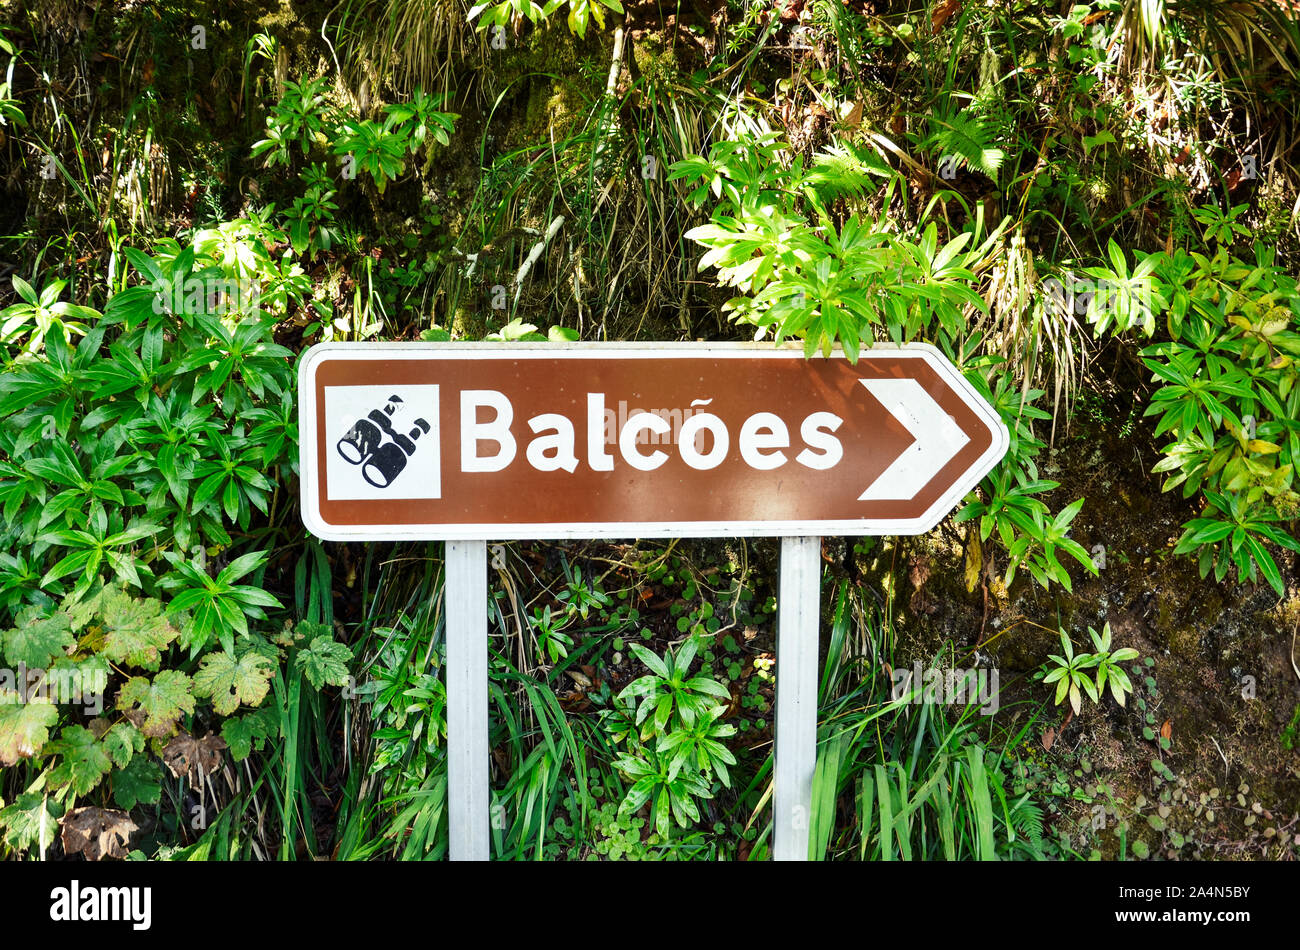 Brown Tourist Richtung geben dem berühmten Levada dos Balcoes Trail in Madeira, Portugal. Informationen Zeichen, Marking System. Grünen Wald im Hintergrund. Stockfoto